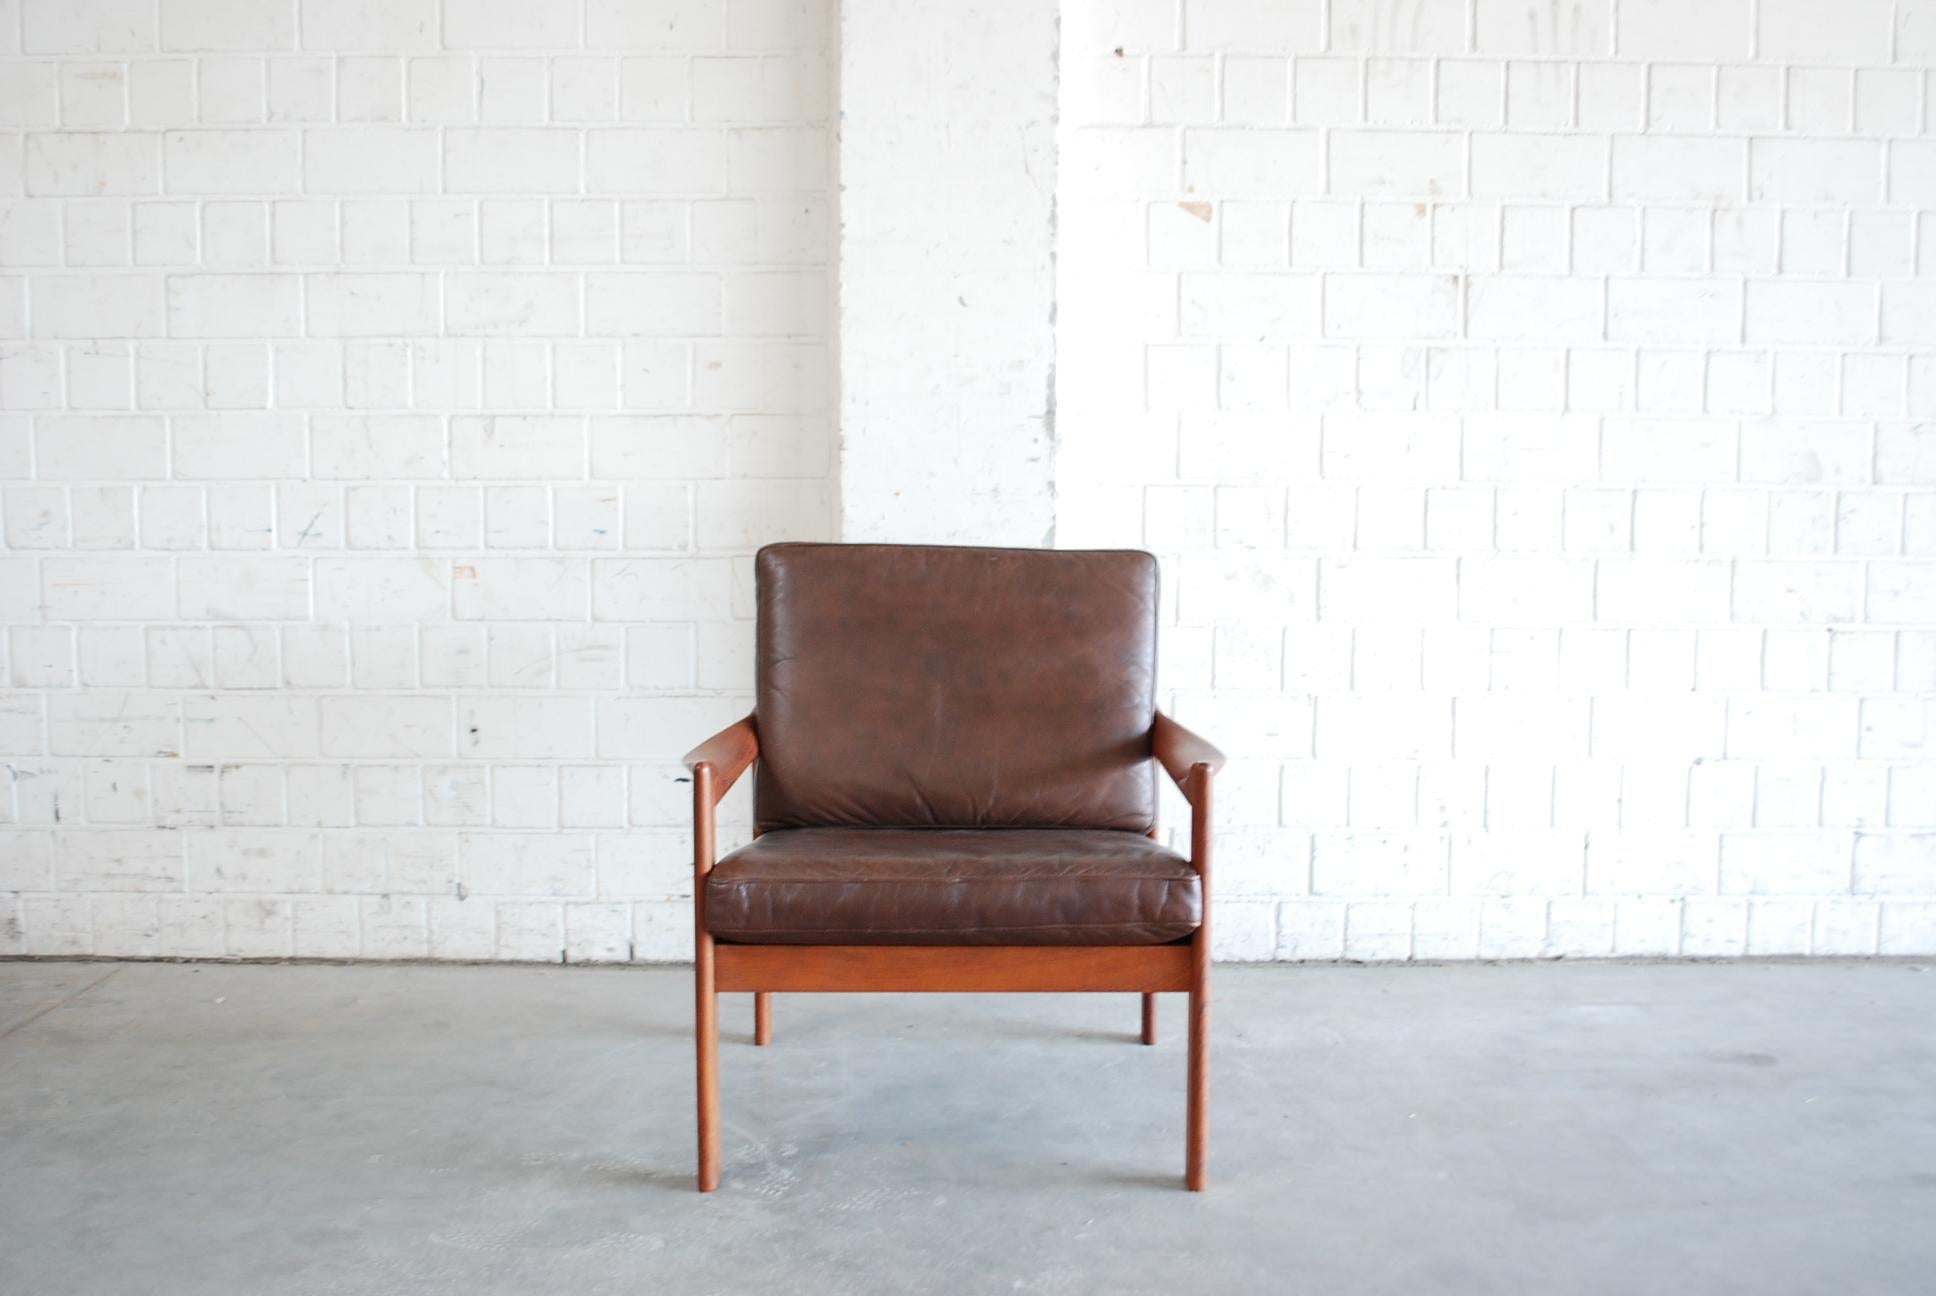 Chaise moderne danoise en teck avec cuir aniline marron.
Conçu par Illum Wikkelsø et fabriqué par Niels Eilersen.
Grand confort grâce aux accoudoirs organiques incurvés.